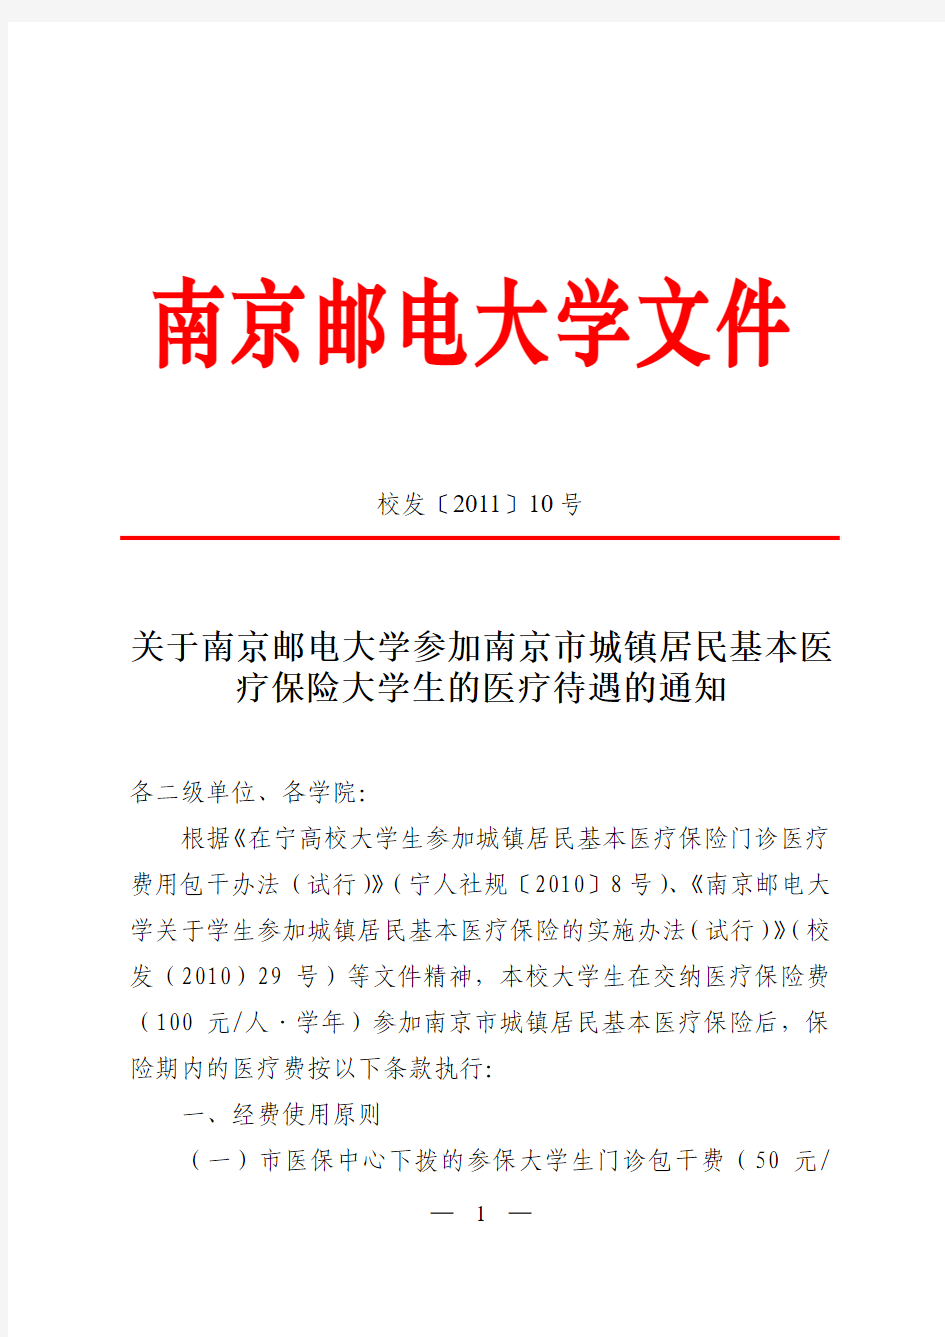 关于南京邮电大学参加南京市城镇居民基本医疗保险大学生的医疗待遇的通知